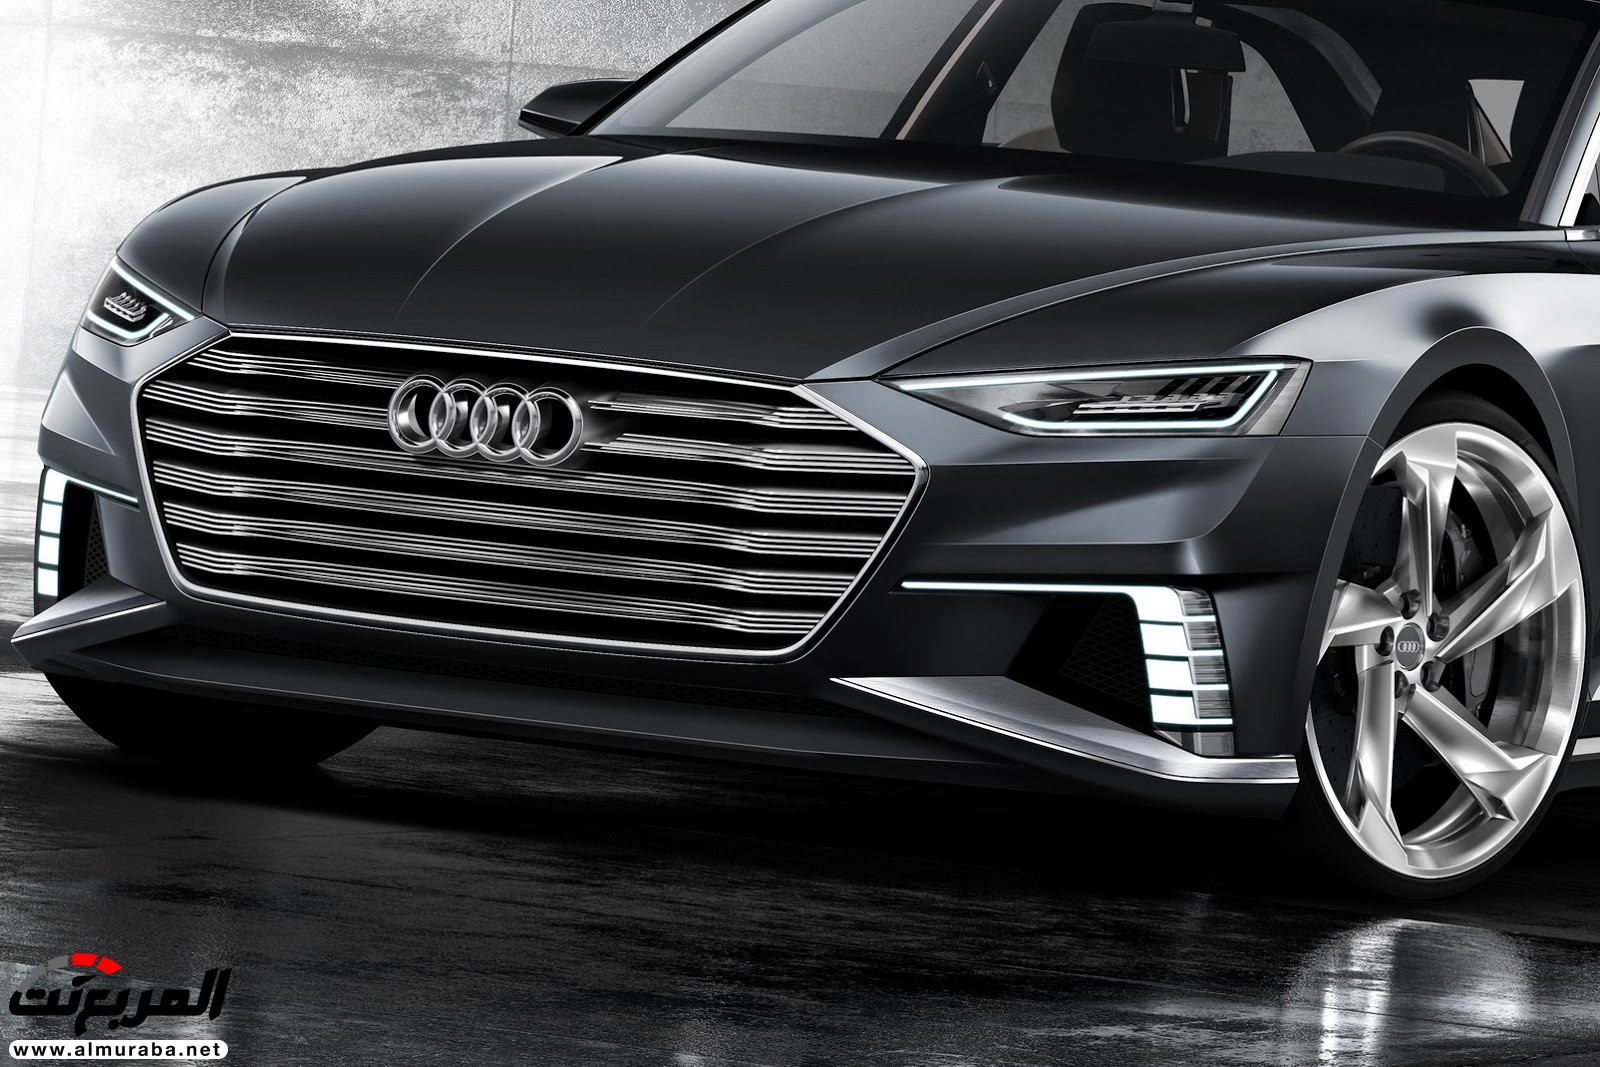 "أودي" A6 الجيل القادم 2019 سيتغير شكلها جذريا وسيتم تدشينها خلال العام المقبل Audi 4